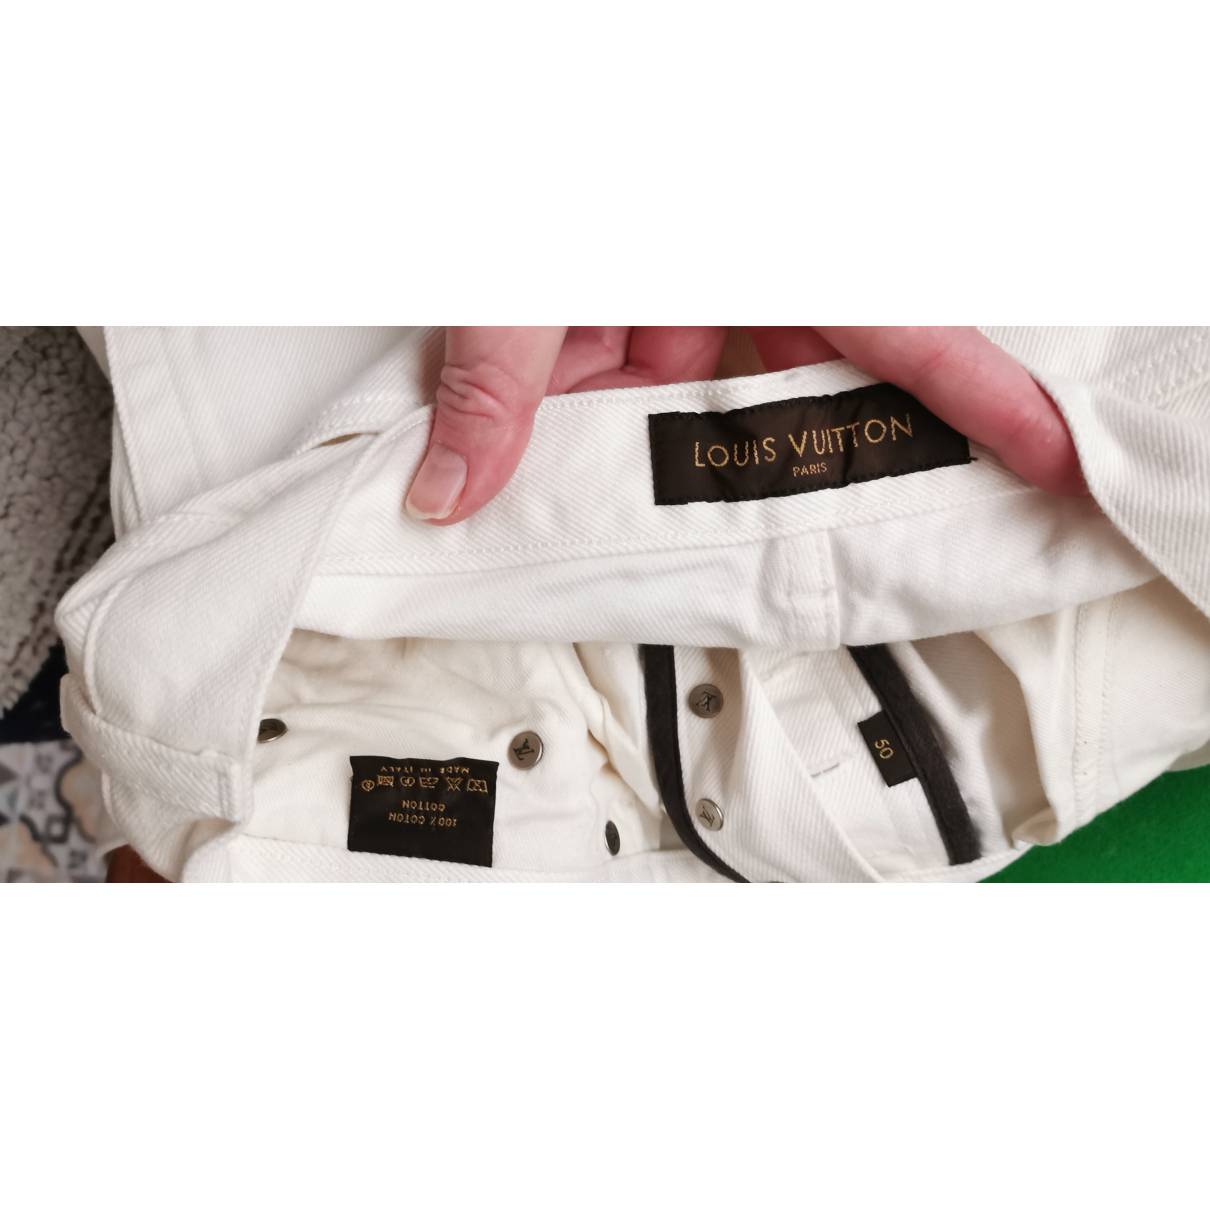 Louis Vuitton - Authenticated Jean - Cotton White Plain For Man, Good condition